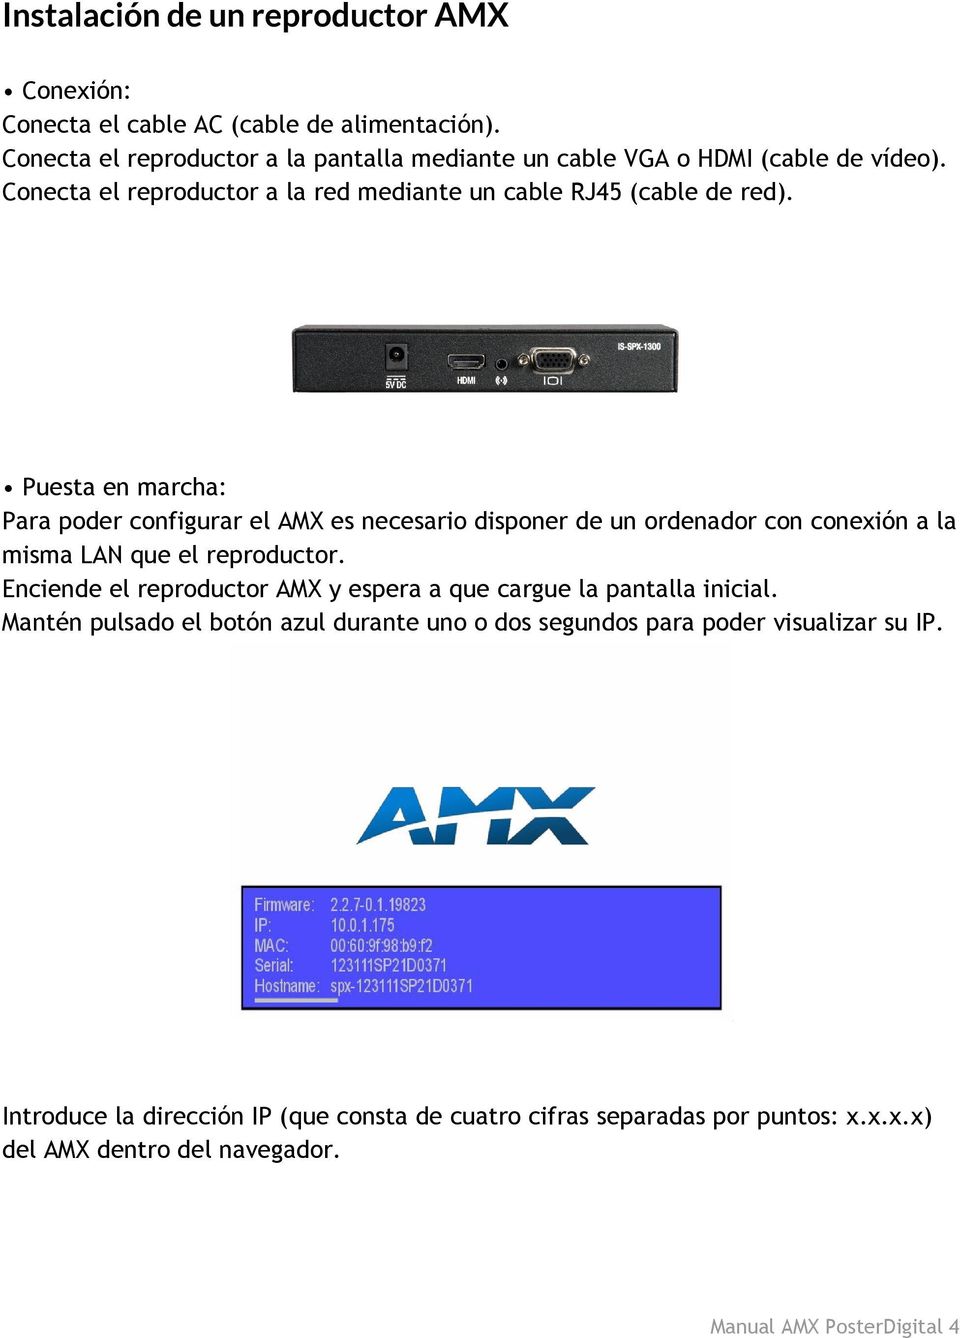 Puesta en marcha: Para poder configurar el AMX es necesario disponer de un ordenador con conexión a la misma LAN que el reproductor.